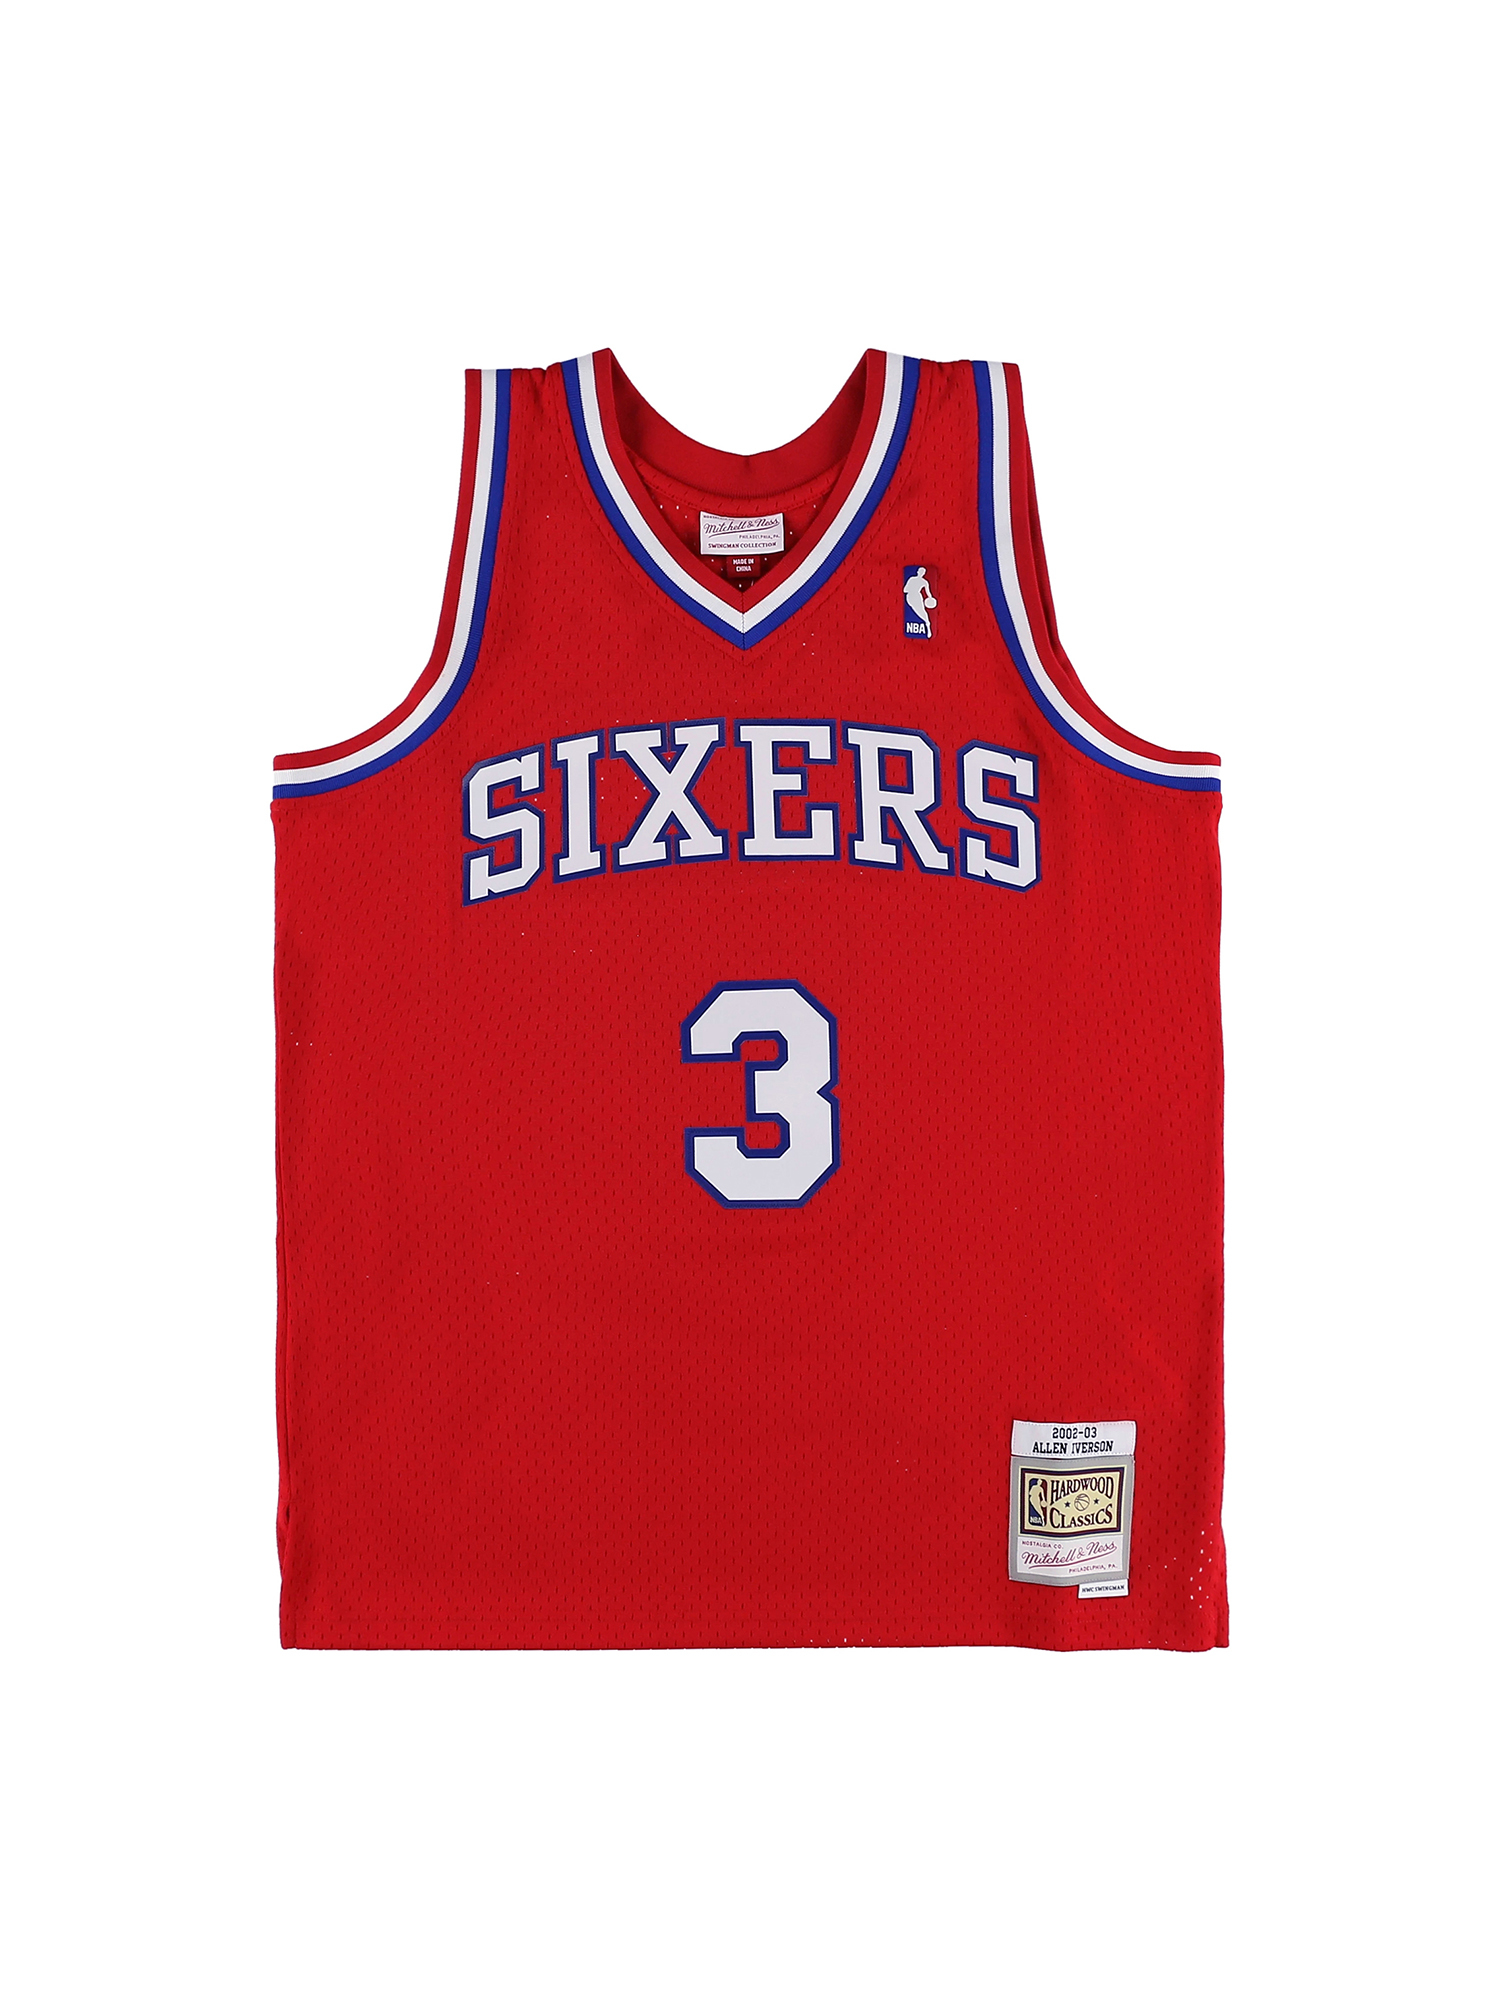 アレン・アイバーソン セブンティシクサーズ オルタネイト スイングマンジャージ 2002-03 PHILADELPHIA 76ERS NBA 20TH  ANNIVERSARY TI